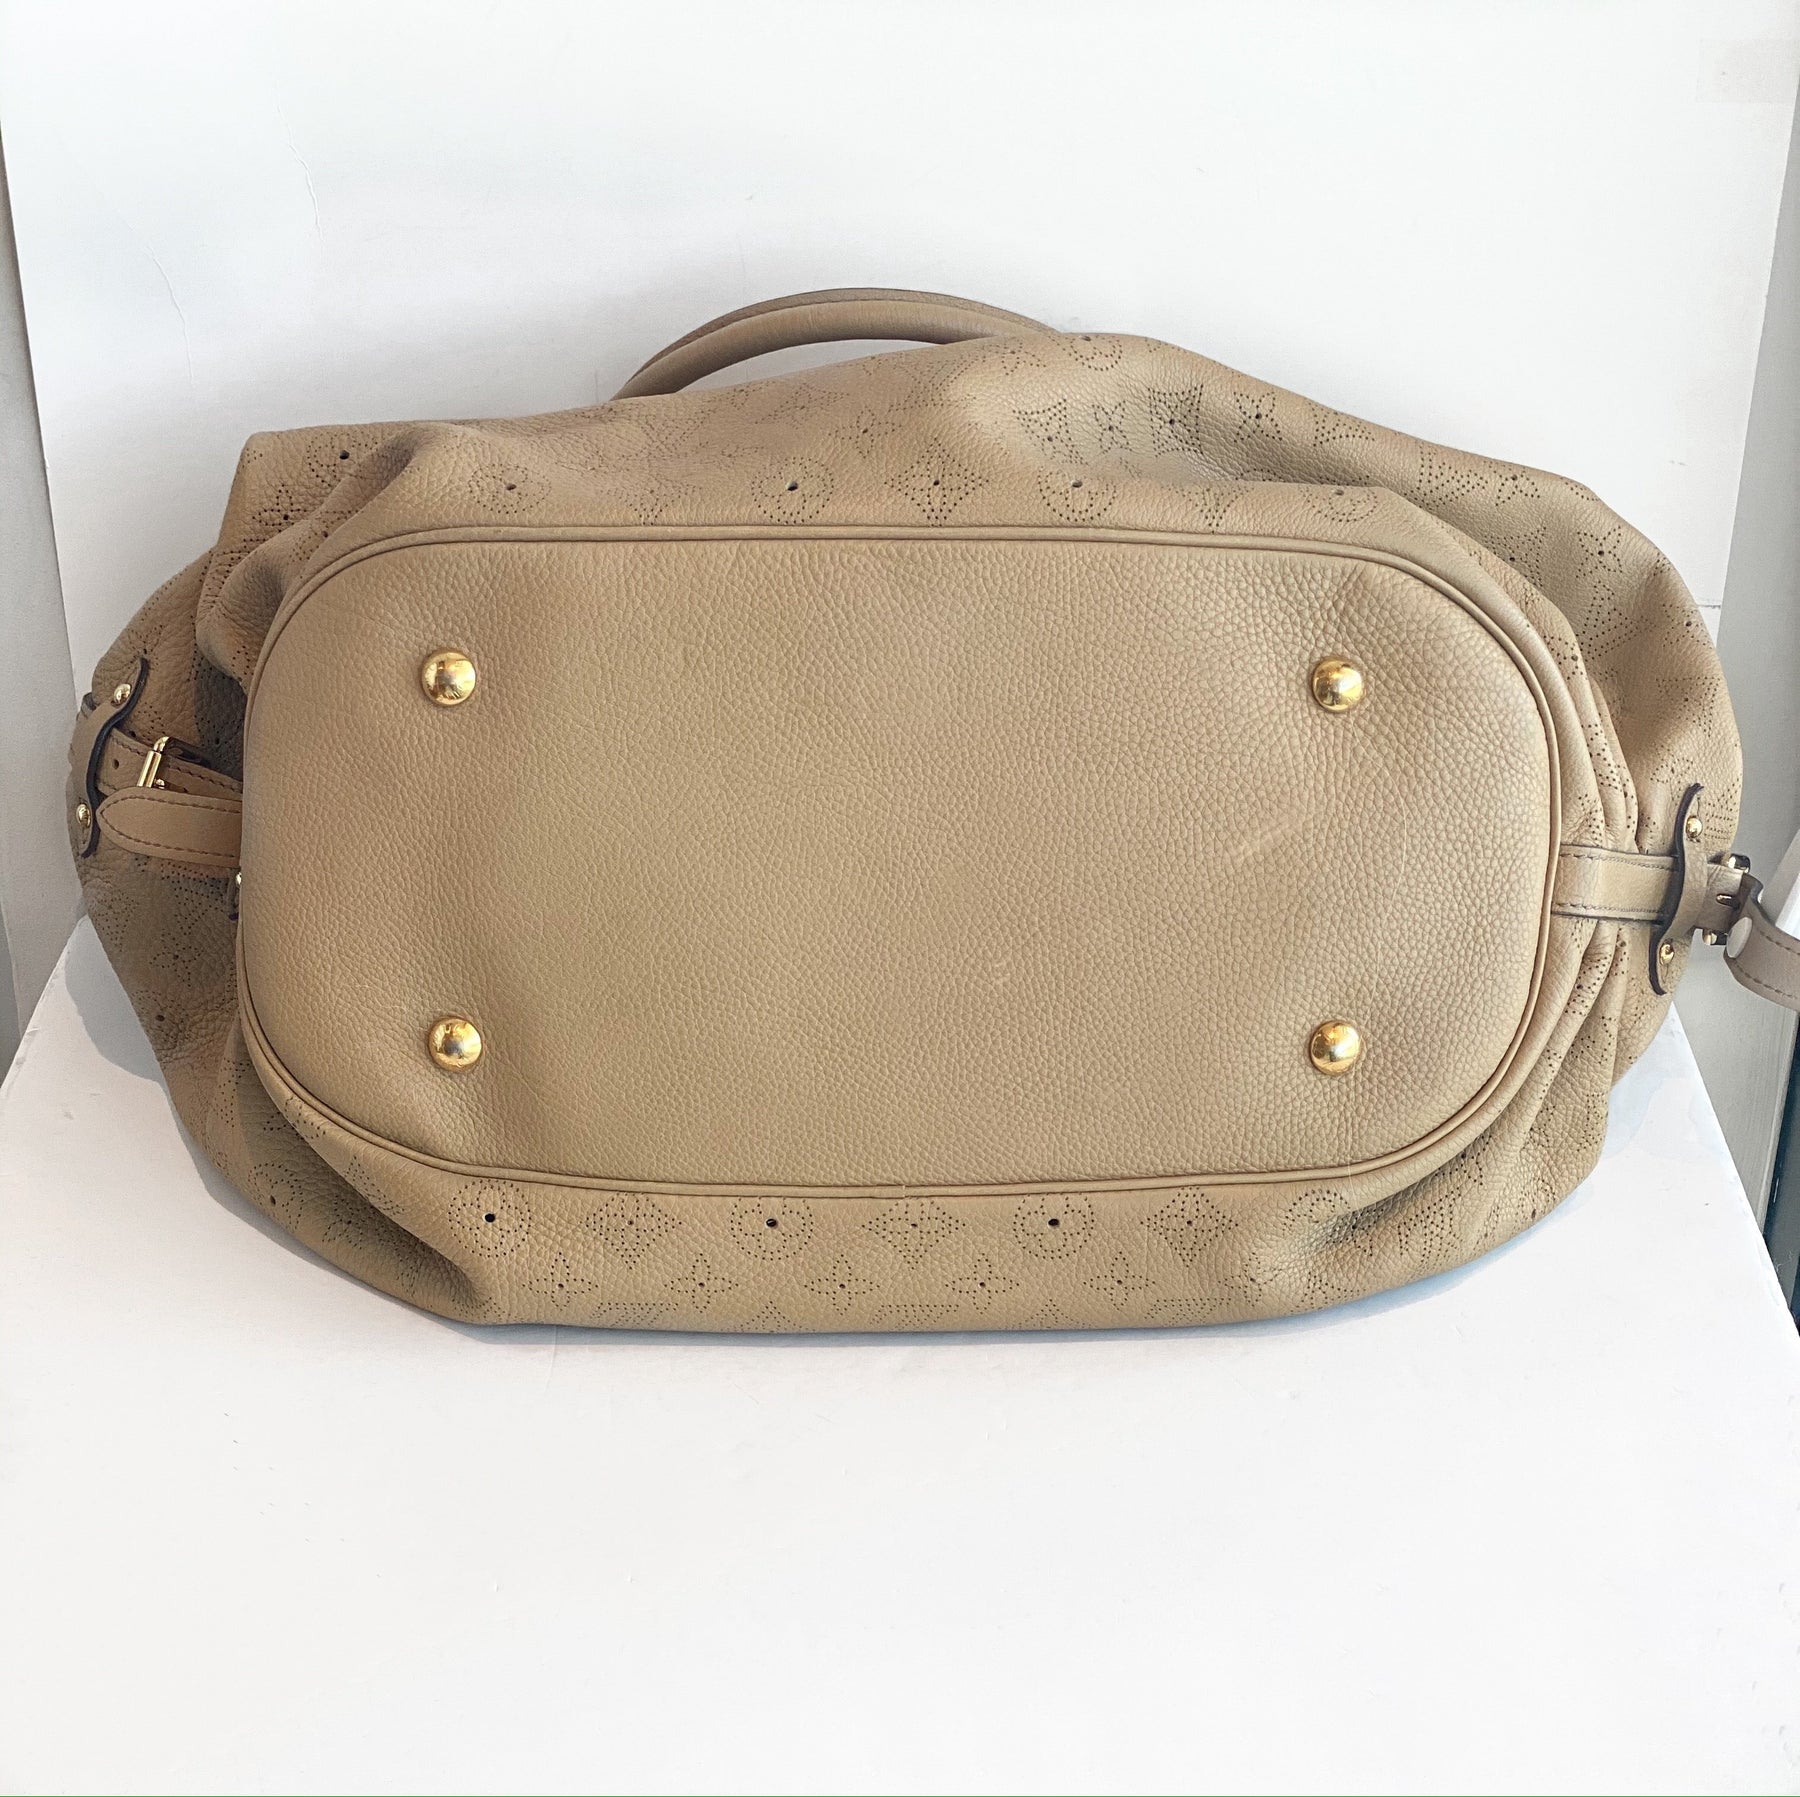 Louis Vuitton Mahina Hobo Bag Monogram Tan Leather Bottom of Bag